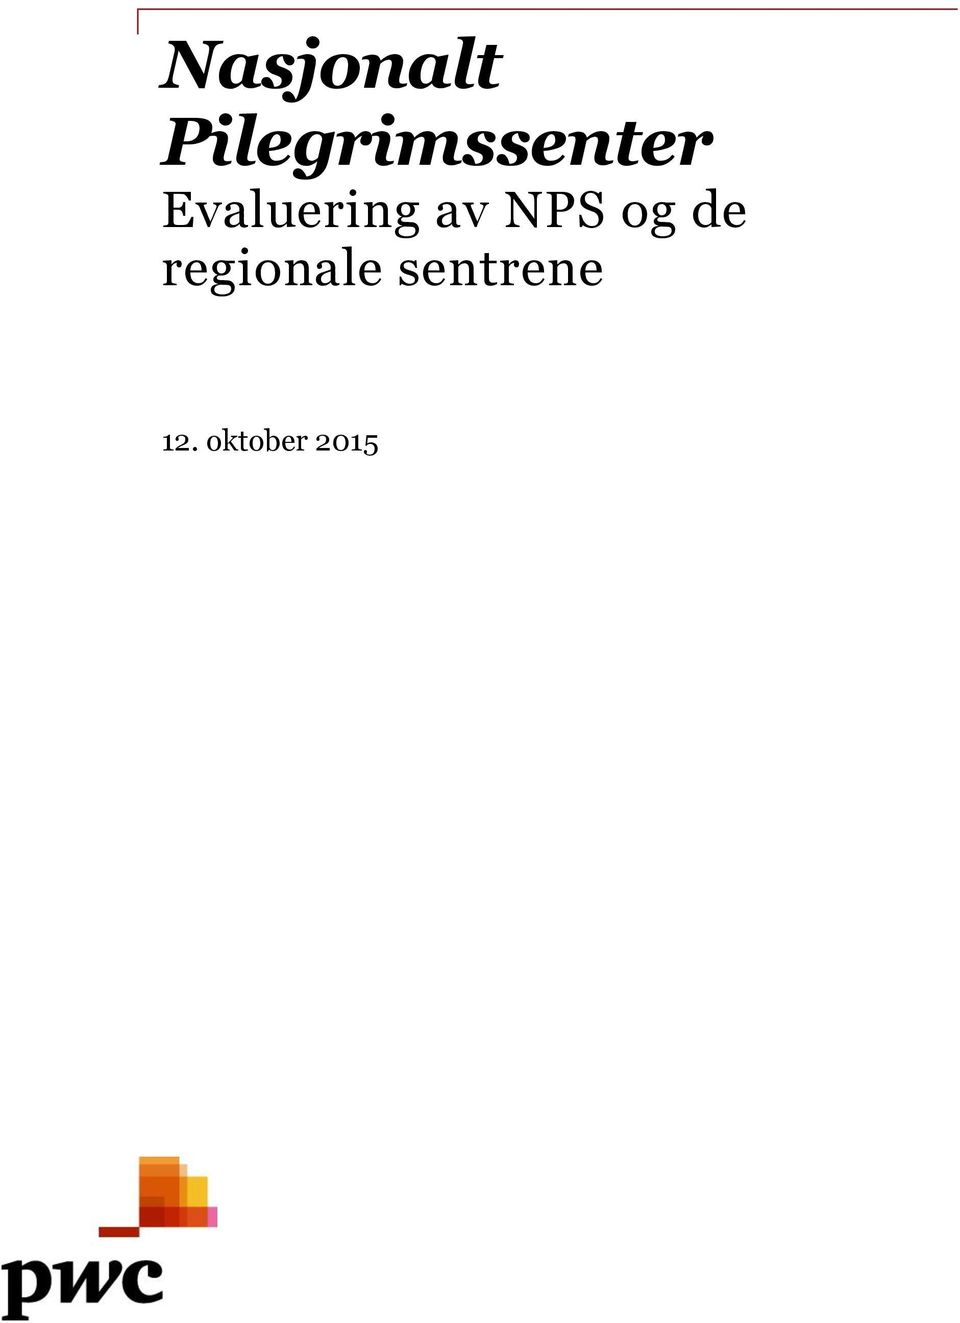 Evaluering av NPS og